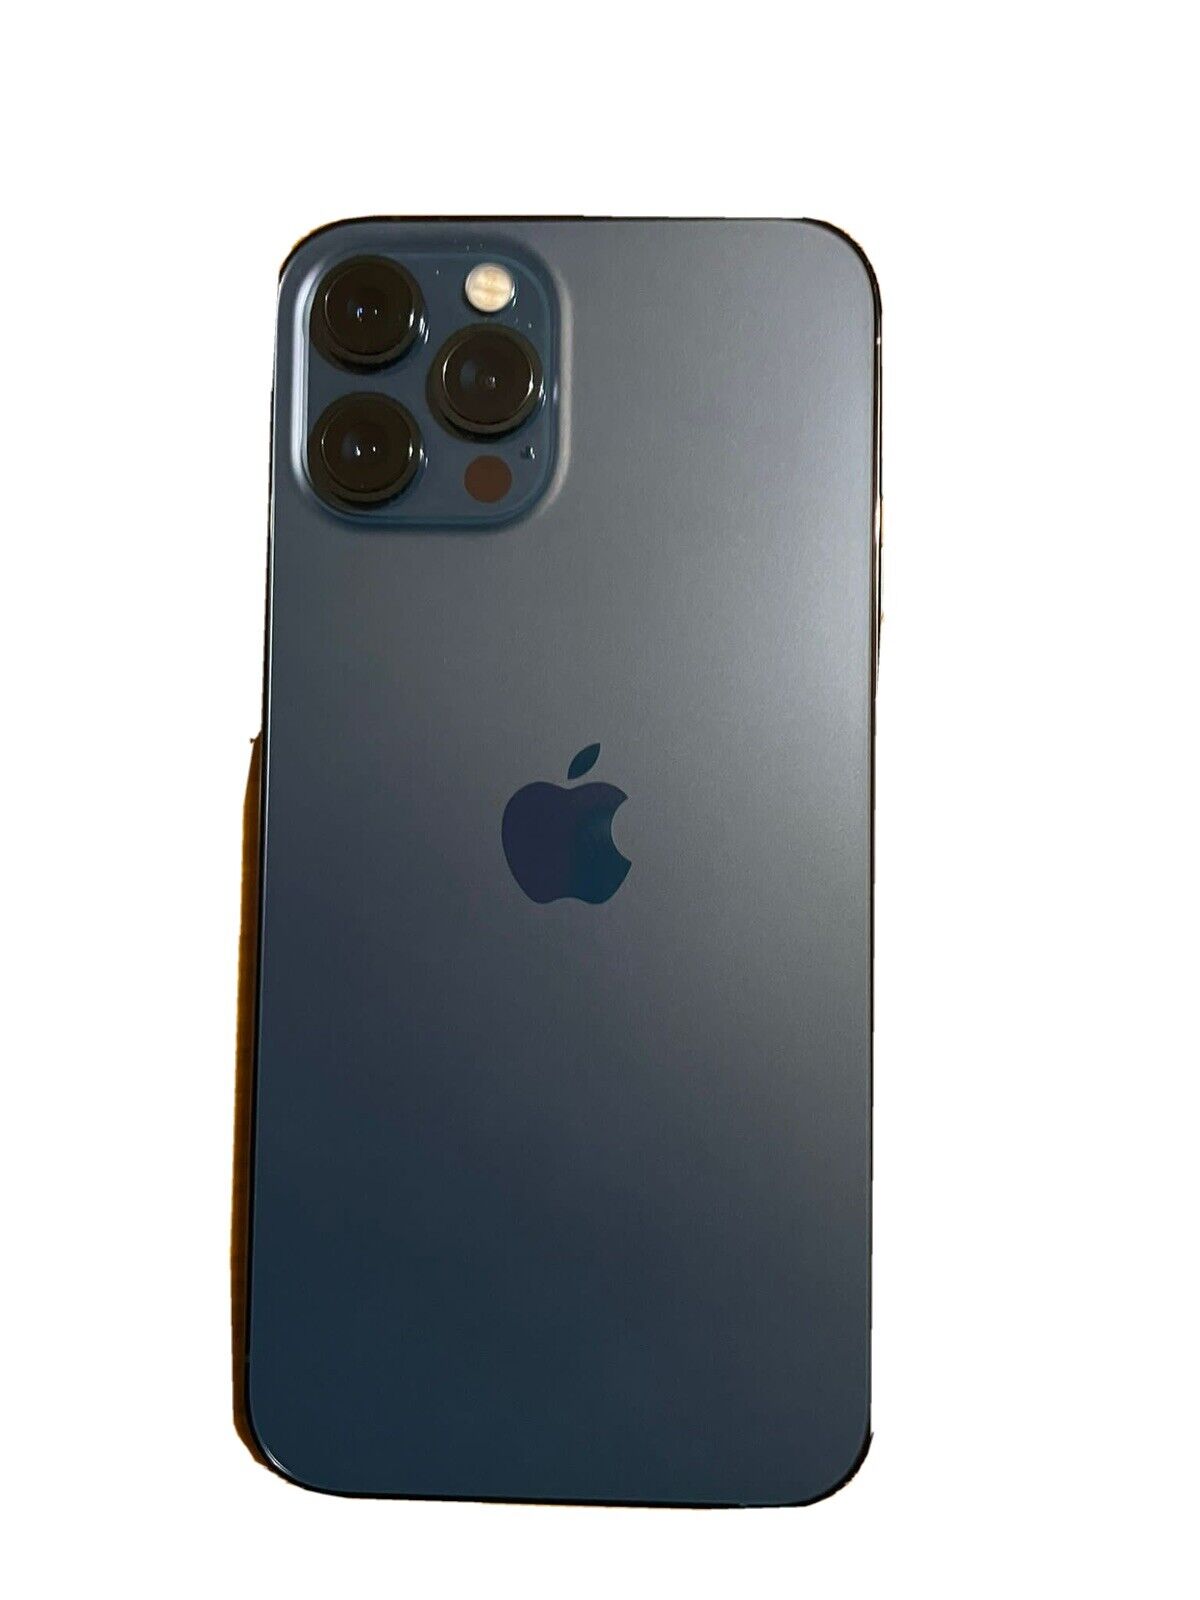 Apple iPhone 12 Pro Max - 256GB - Blu Pacifico (Sbloccato 